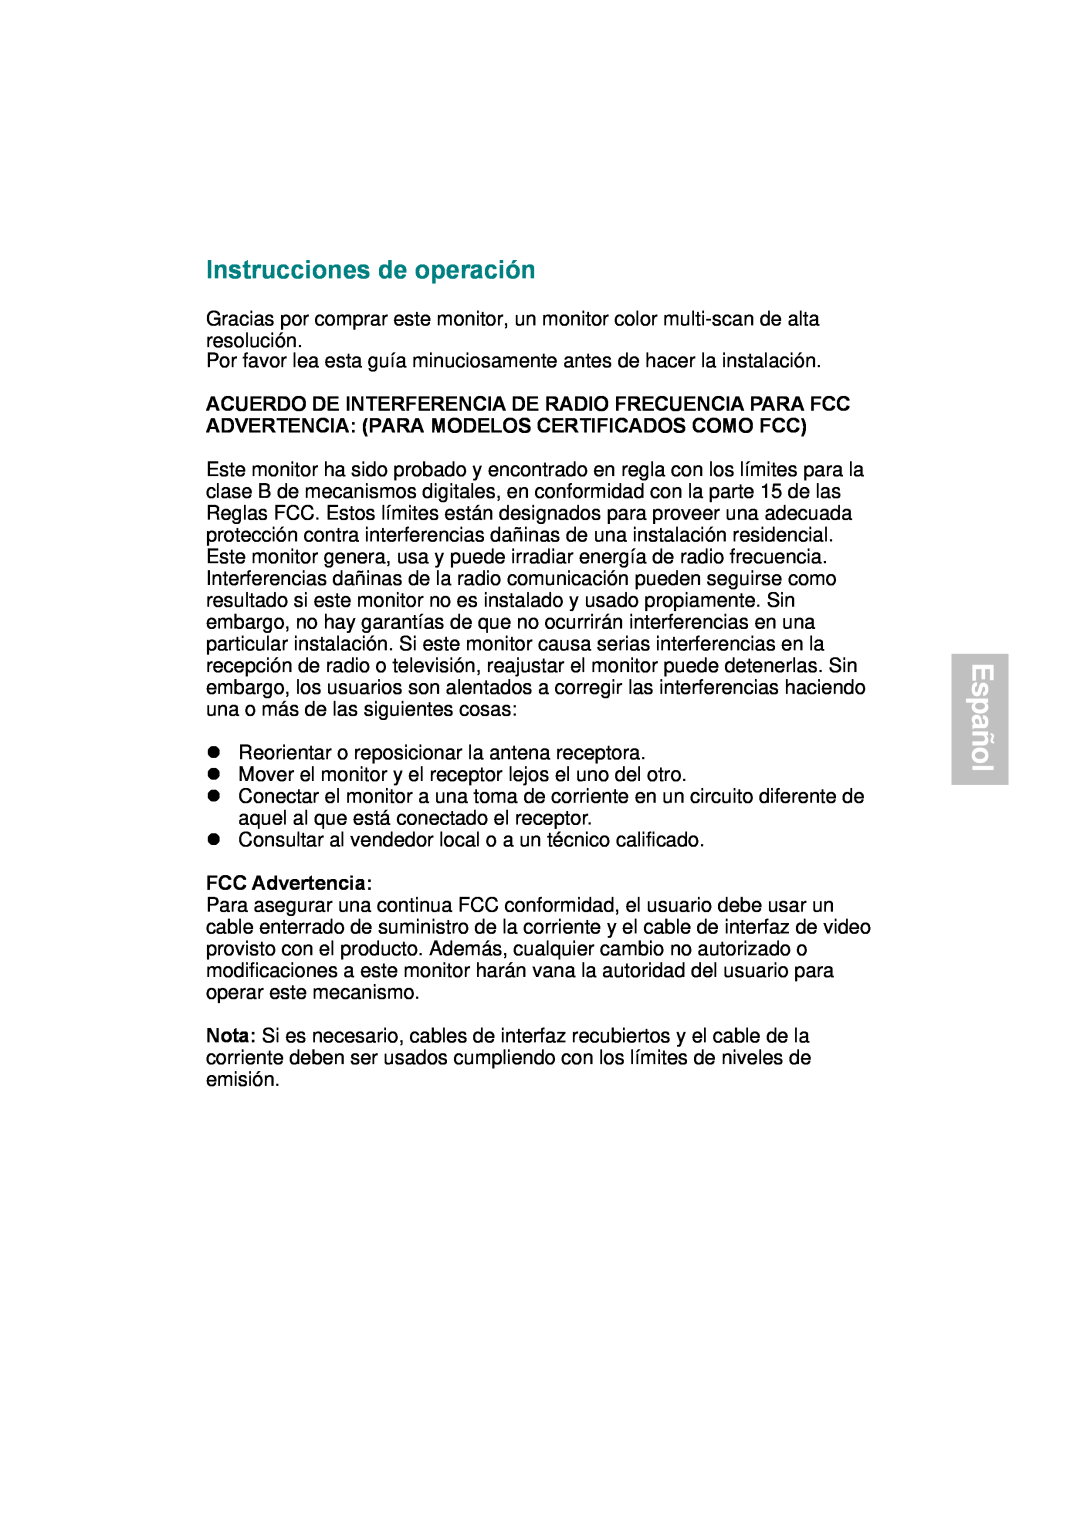 AOC 177S manual Español, Instrucciones de operación, FCC Advertencia 